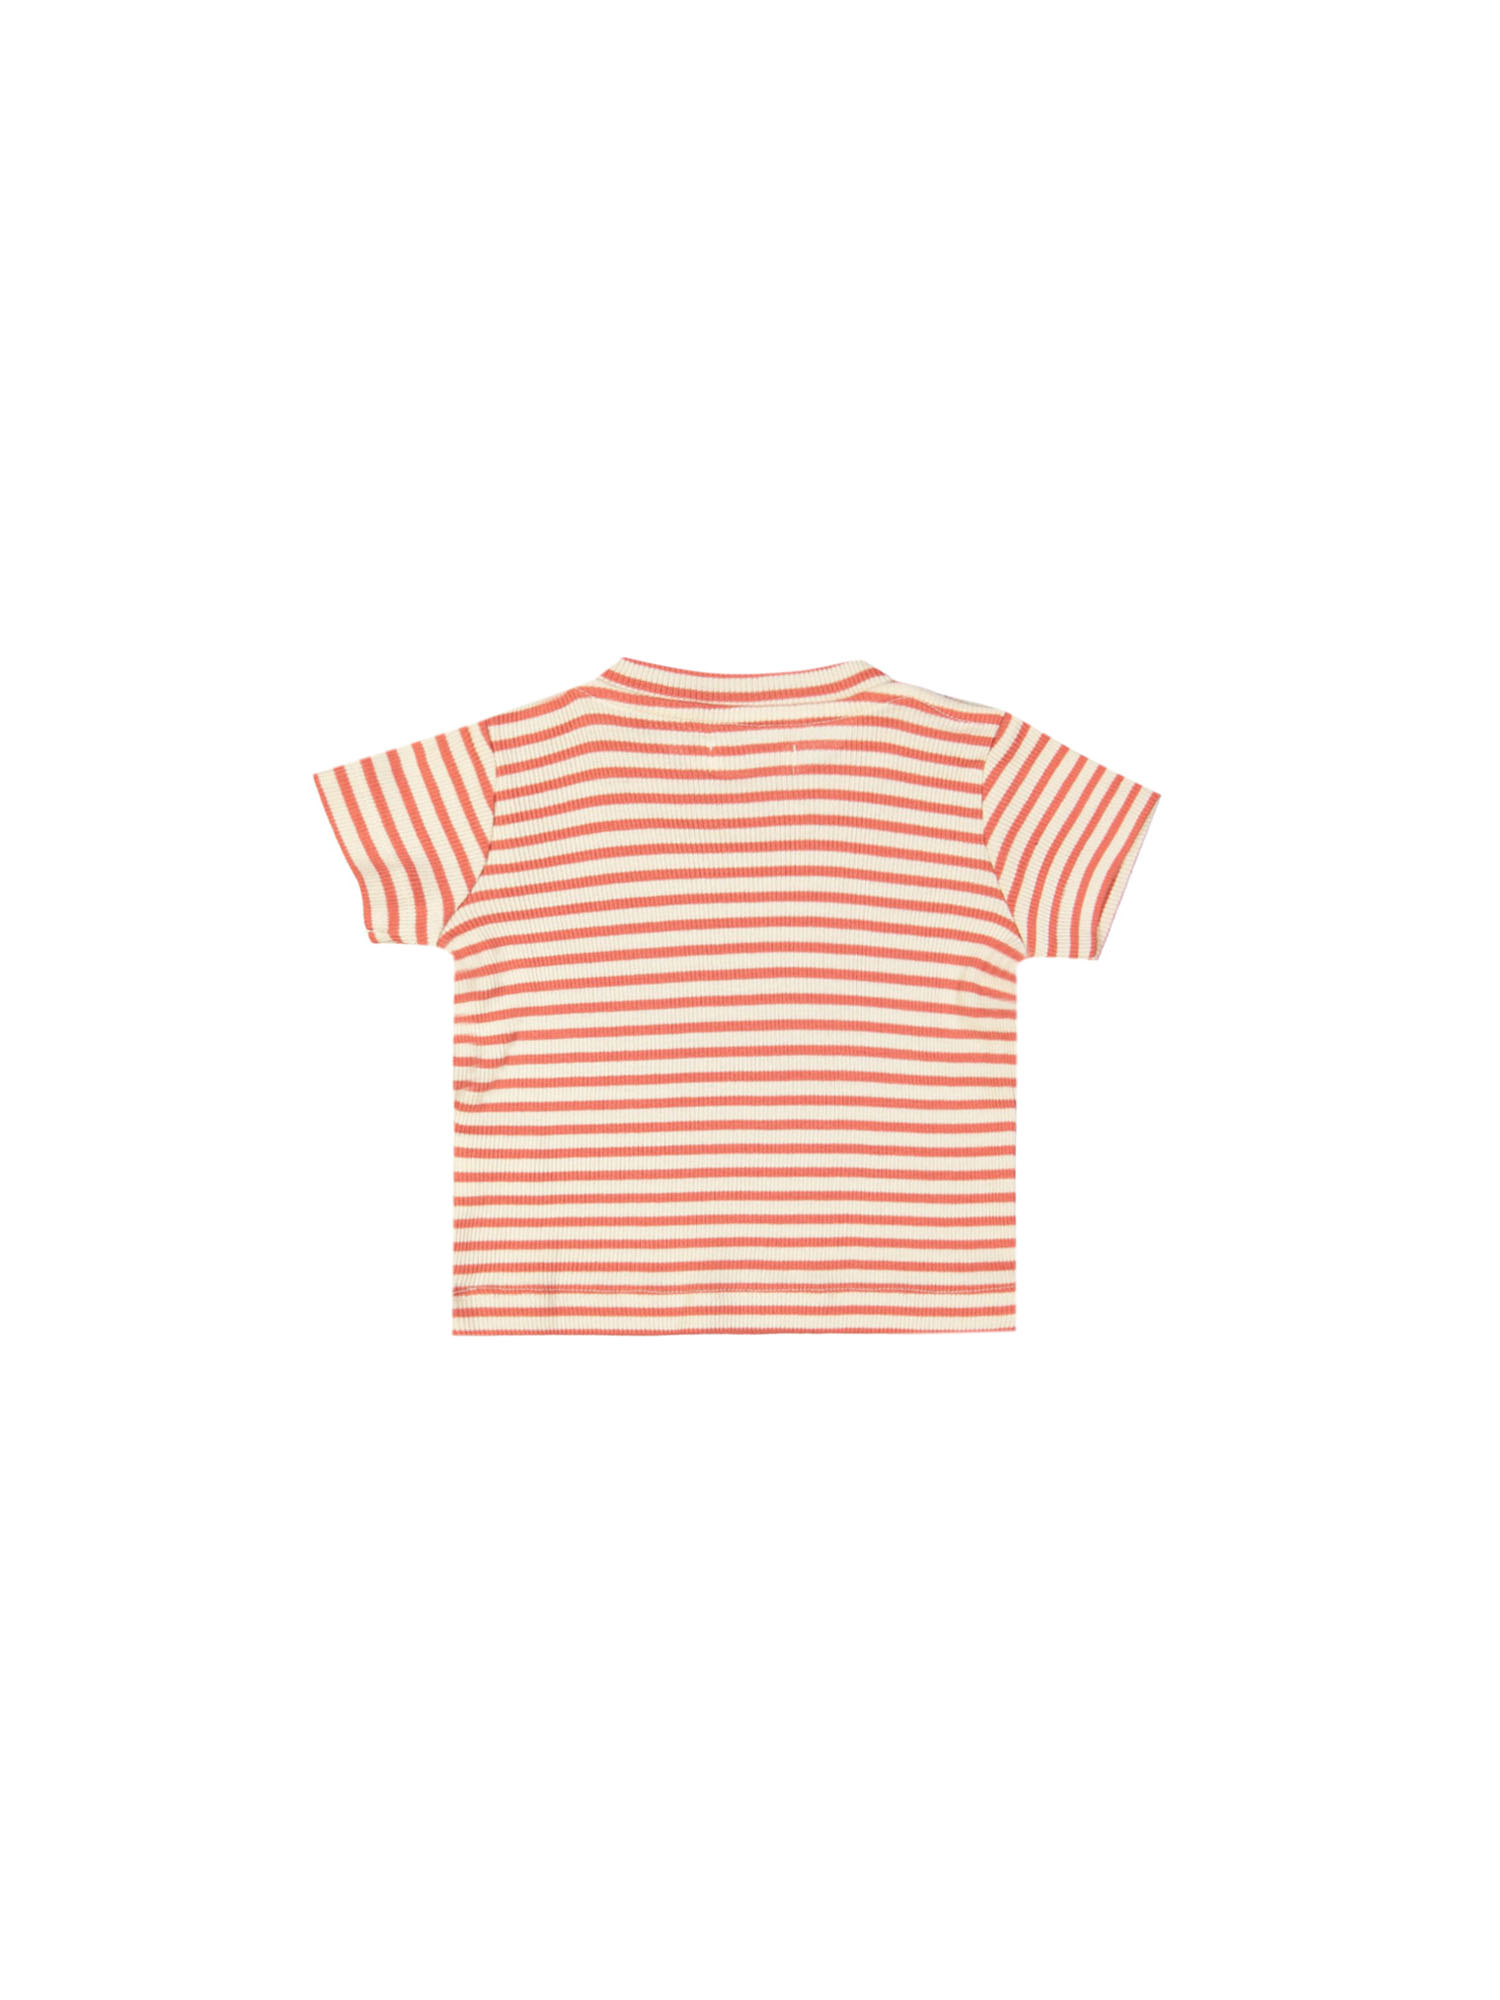 t-shirt mini côte rayée rouge 03m